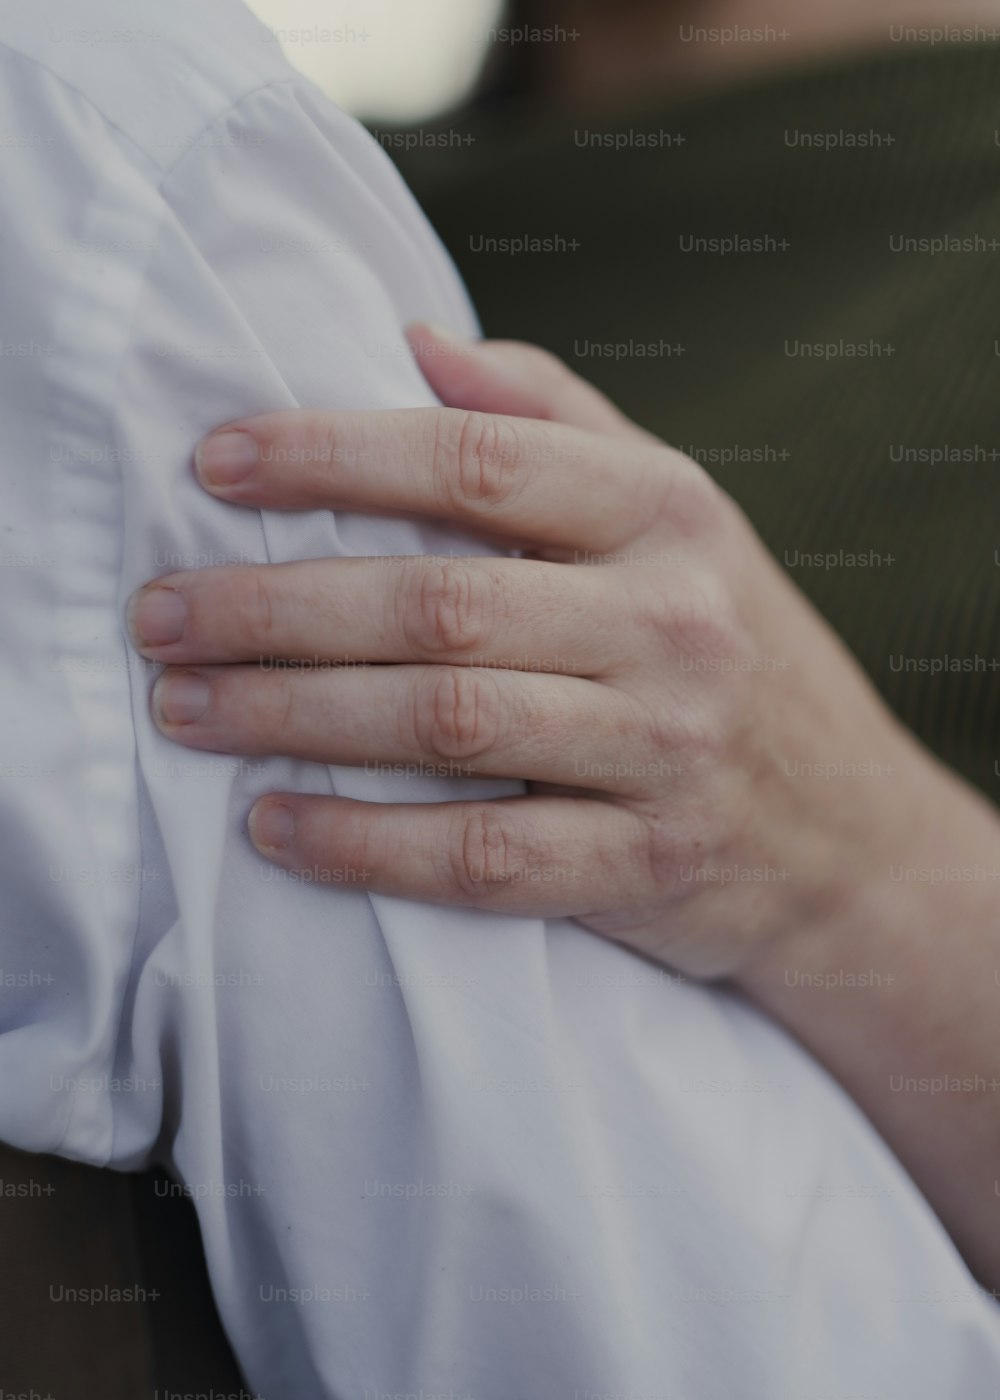 Un primer plano de las manos de una persona sosteniendo una almohada